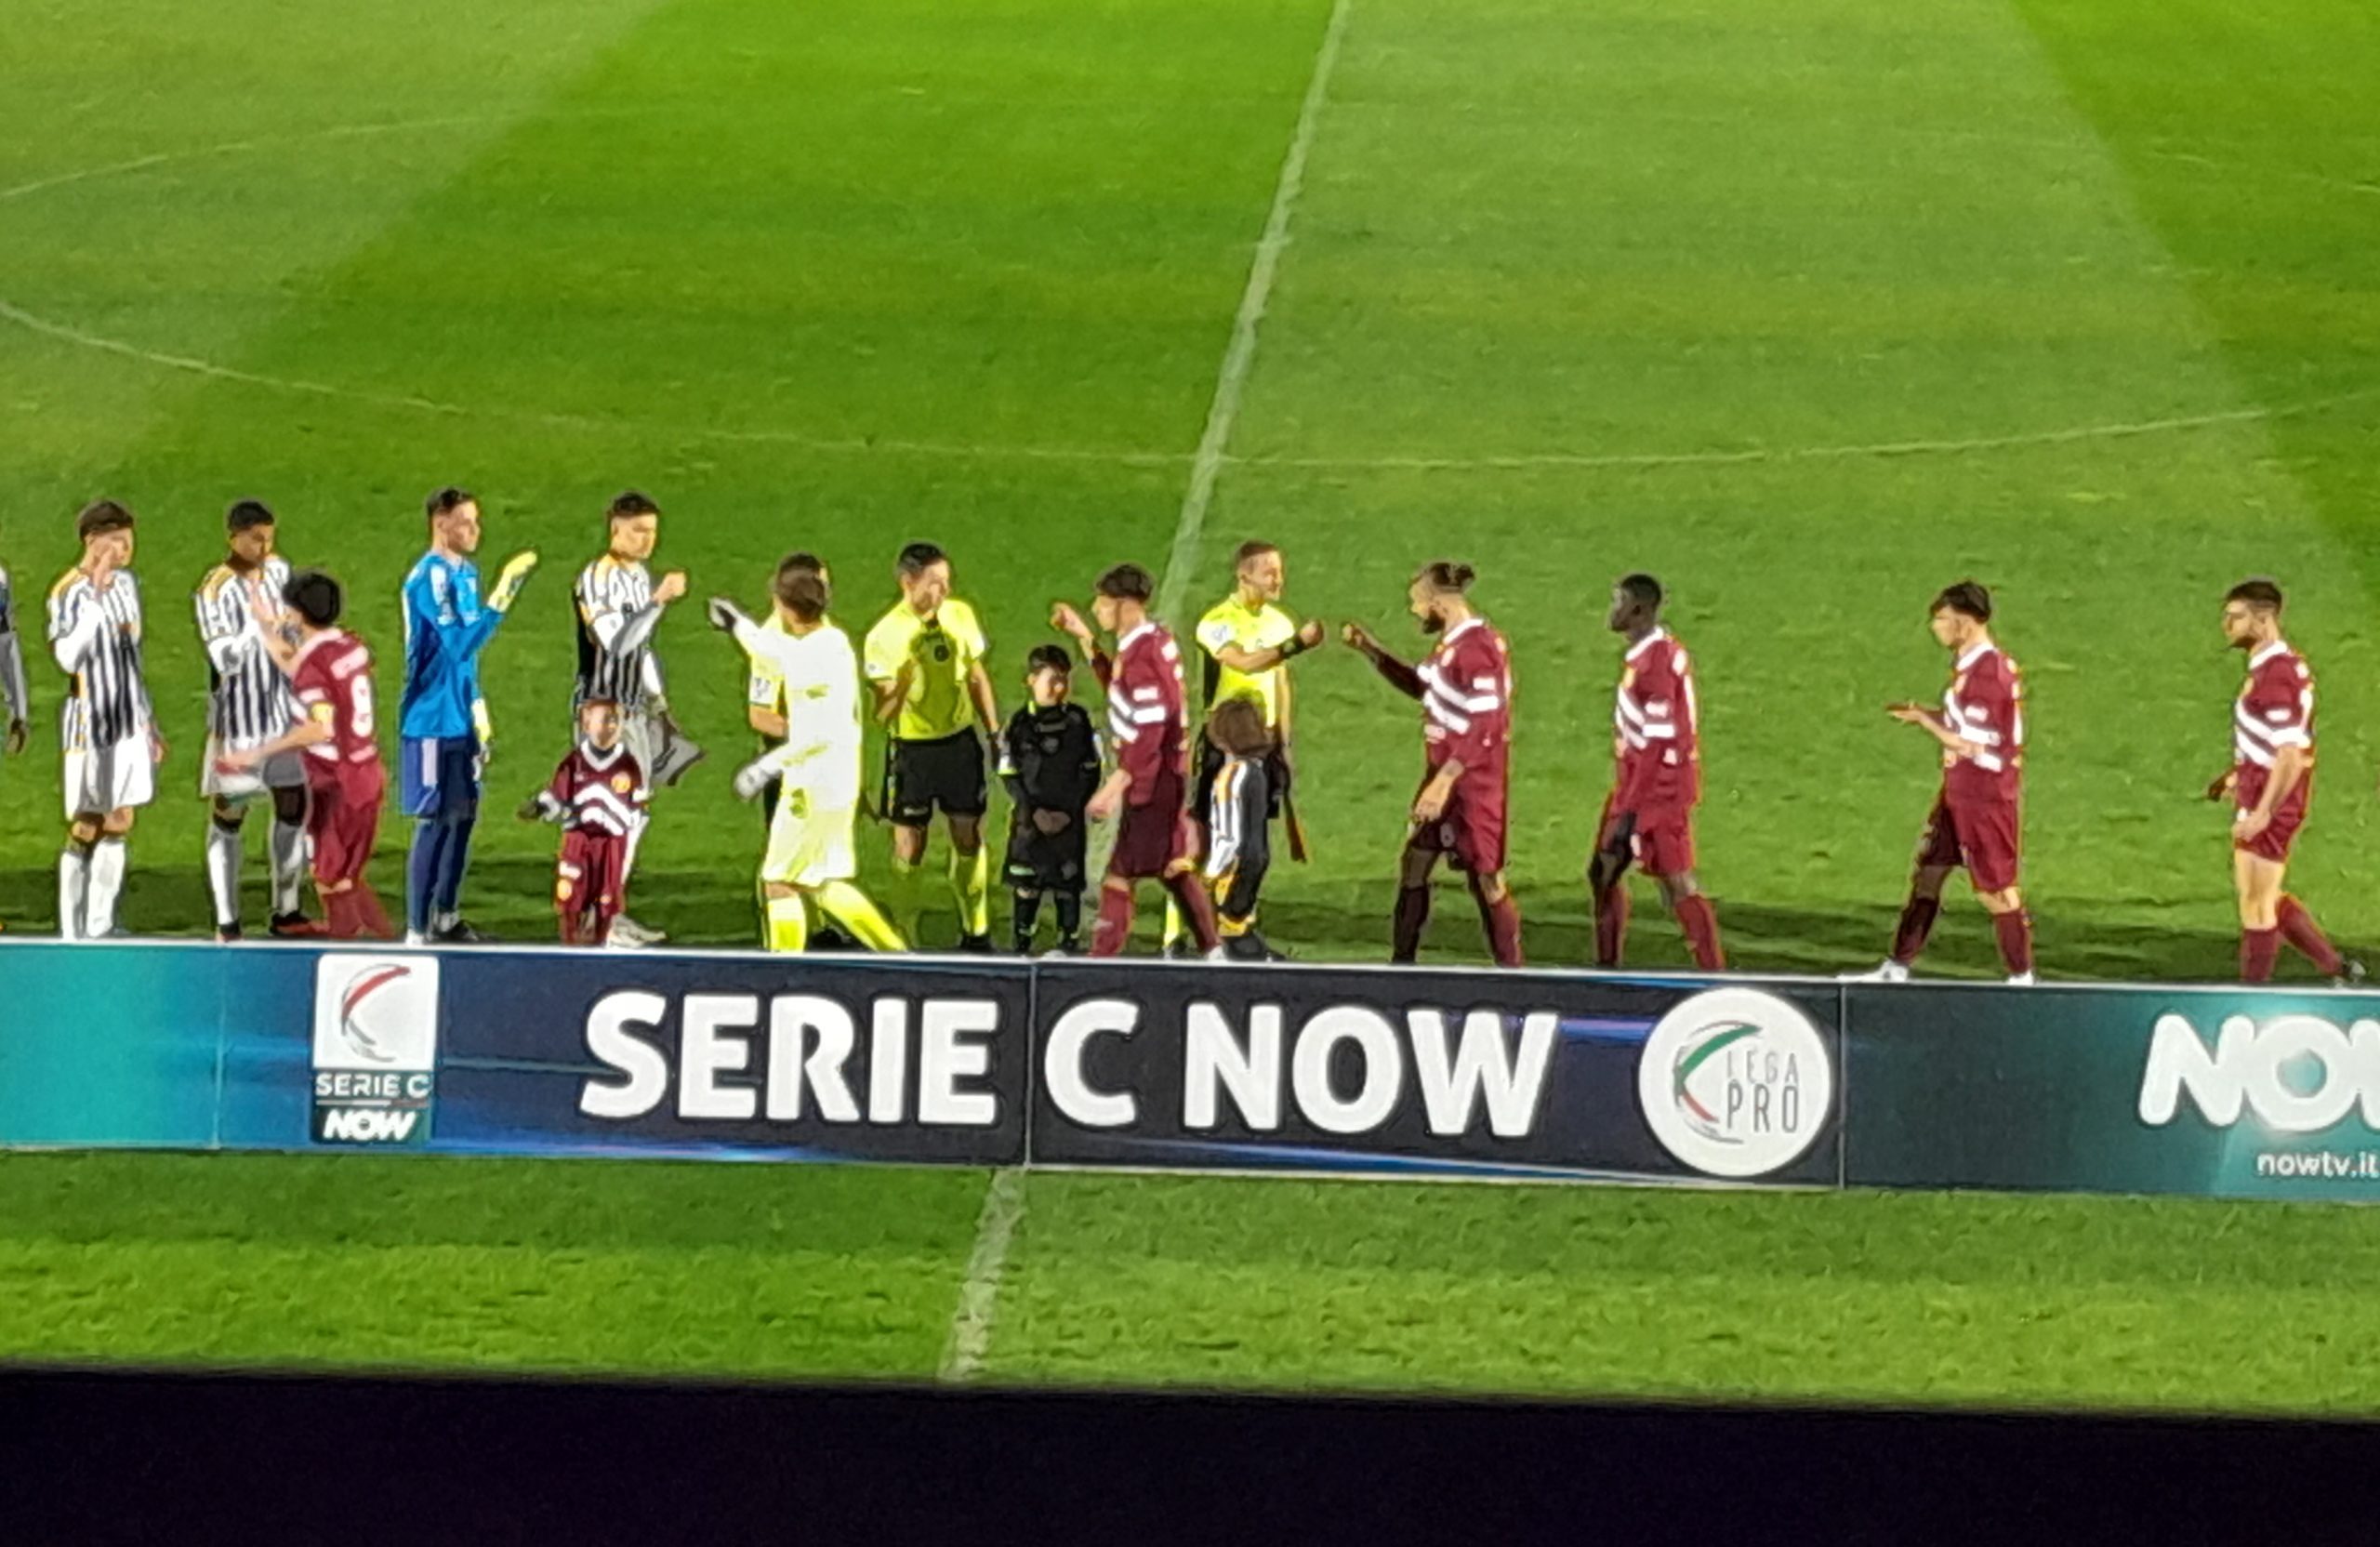 La Next Gen batte l’Arezzo 2-0 e passa il turno playoff. VAR protagonista. Sabato il Pescara in trasferta